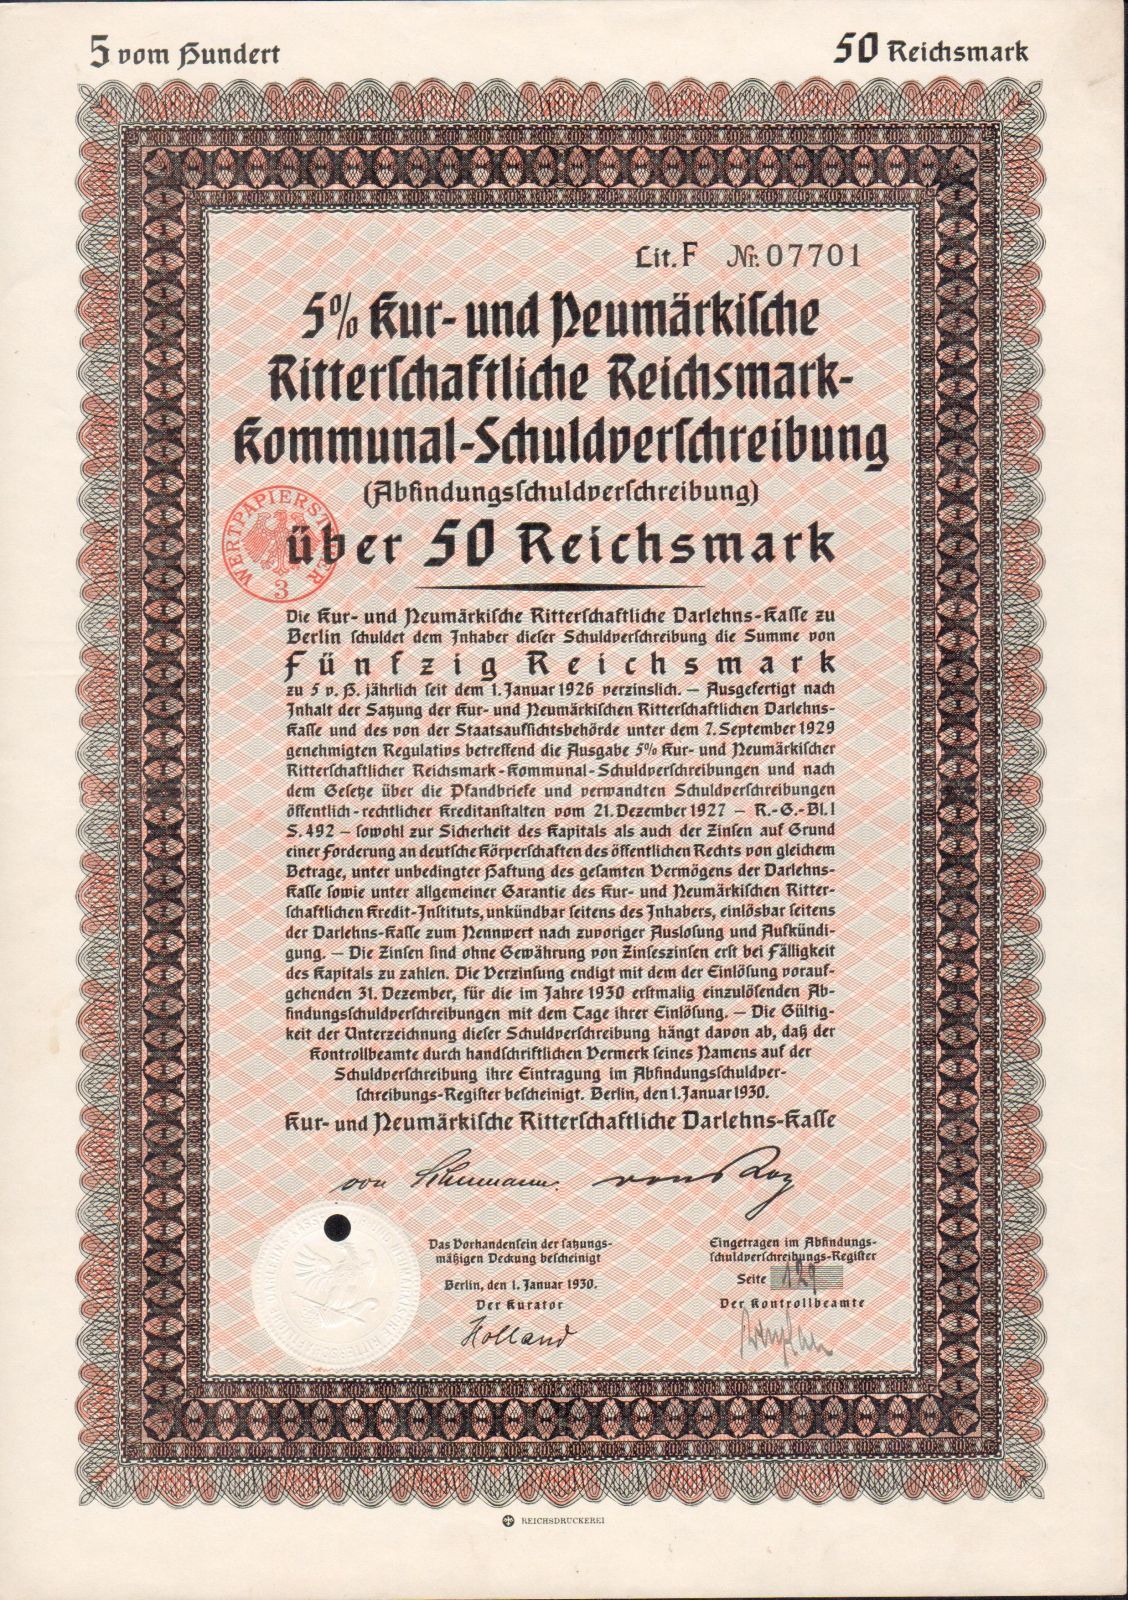 Půjčka Ritterschaftliche Darlehens Schuldverschreibung, Berlín /1930/, 50 Reichsmark, 5%, formát A4